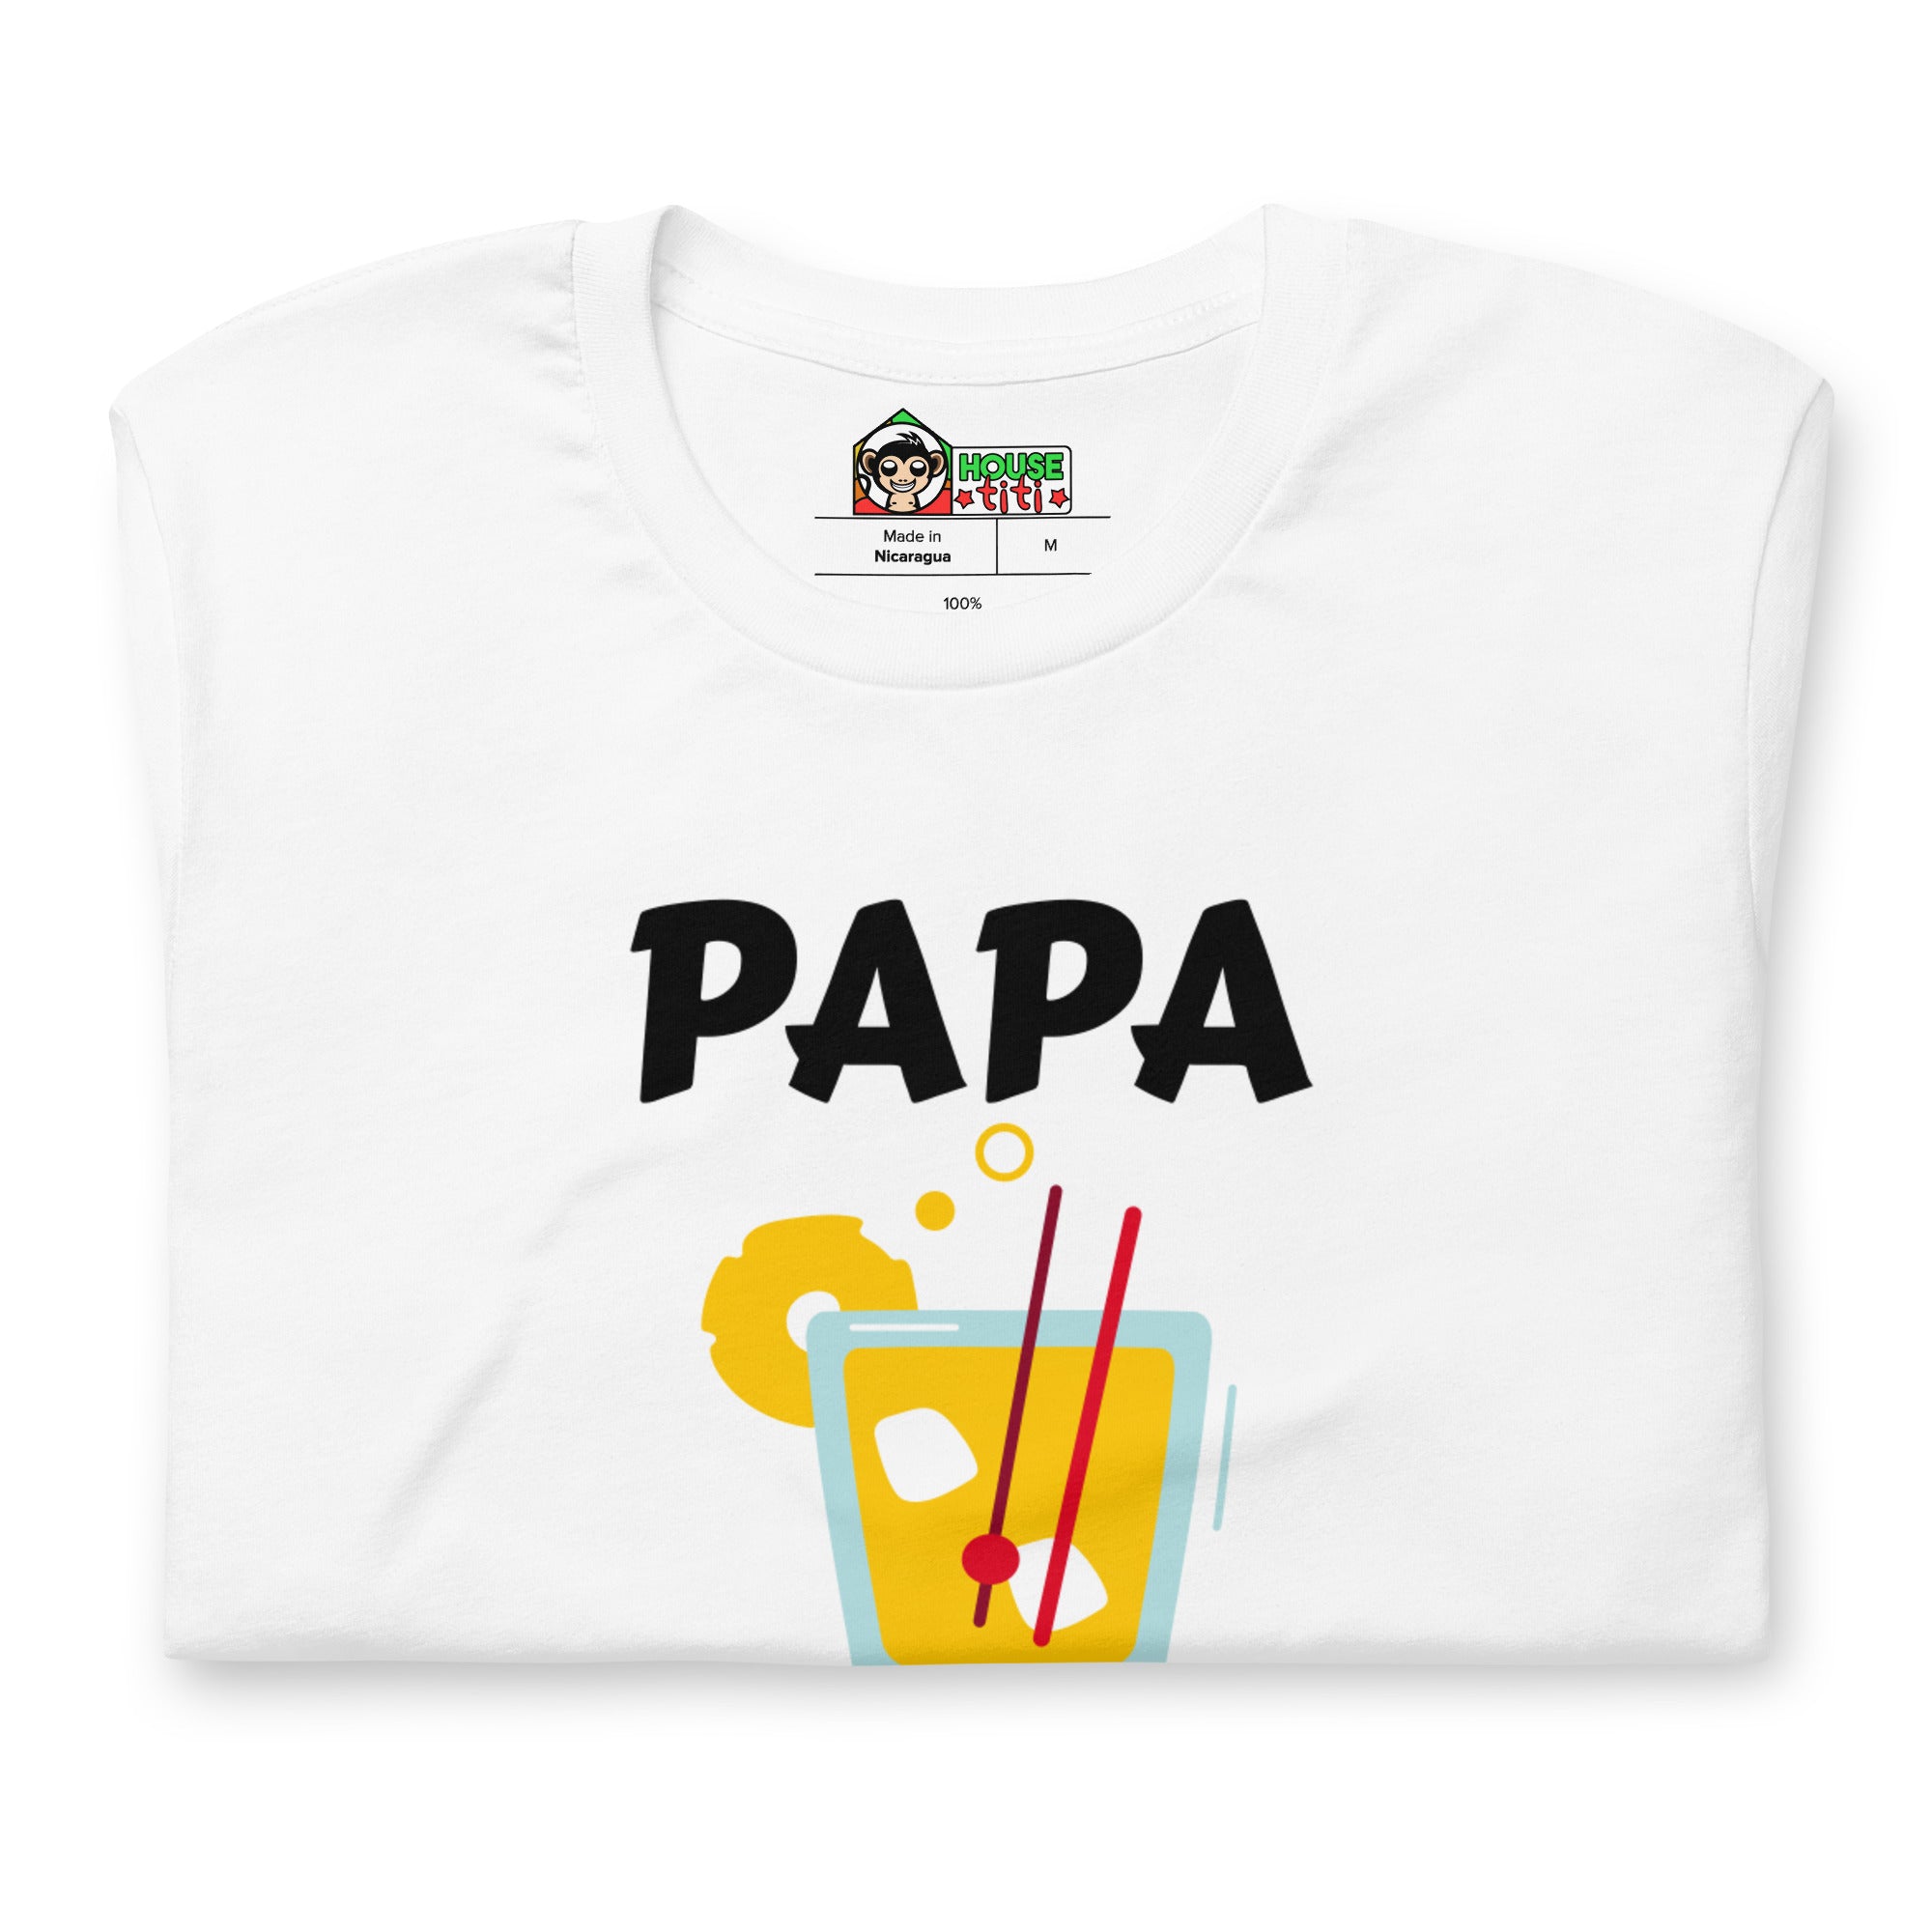 T-shirt unisexe Papa au Rhum (Lettrage noir)